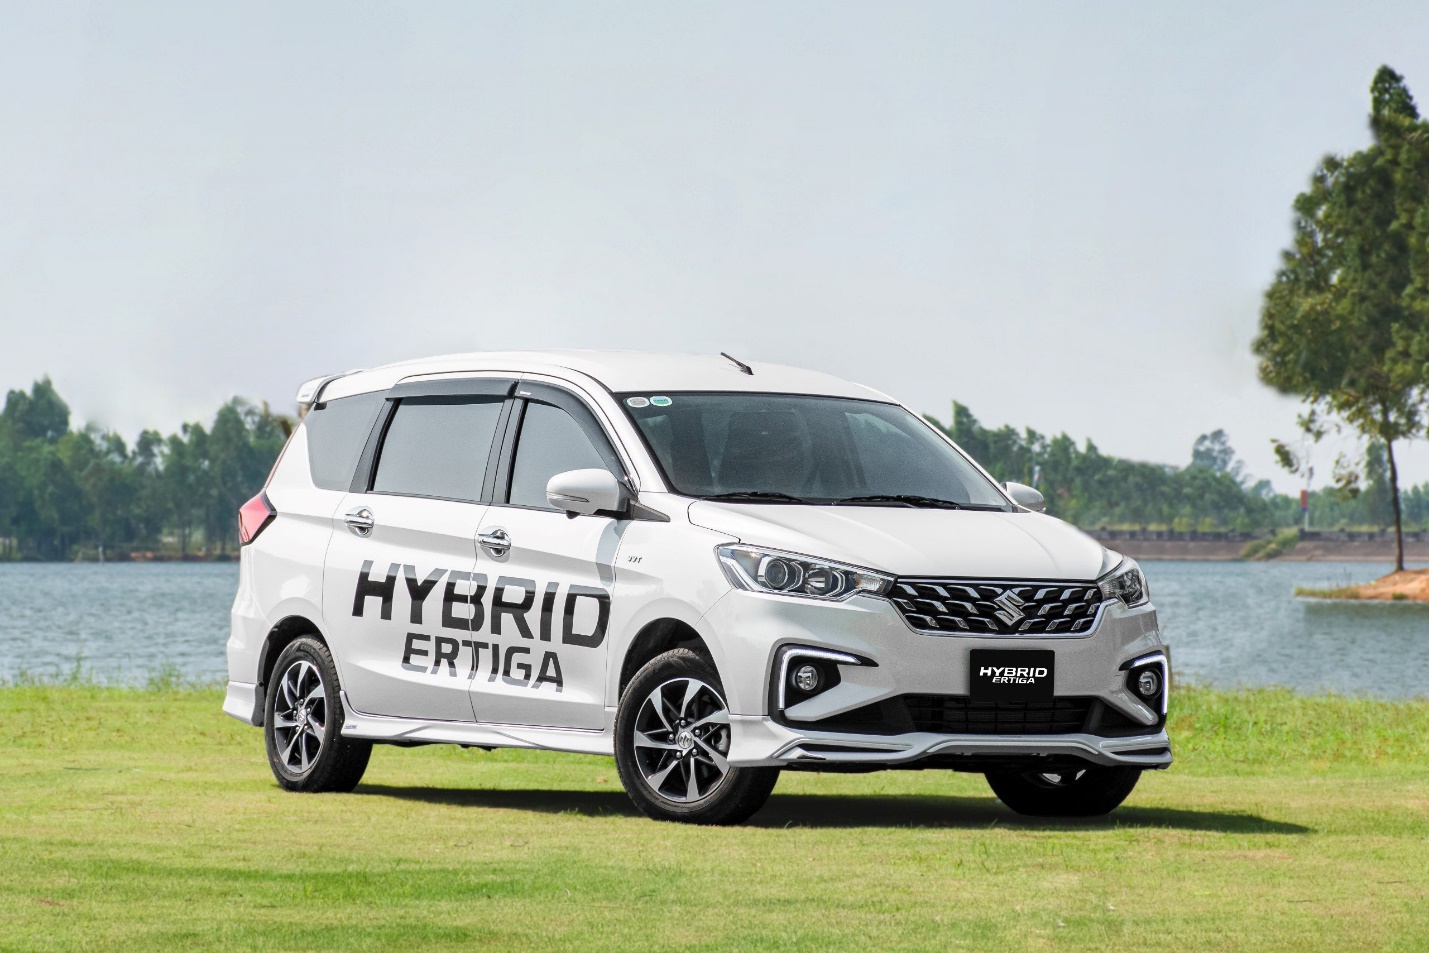 Suzuki Hybrid Ertiga ưu đãi còn 454 triệu đồng, thấp nhất phân khúc - Ảnh 1.